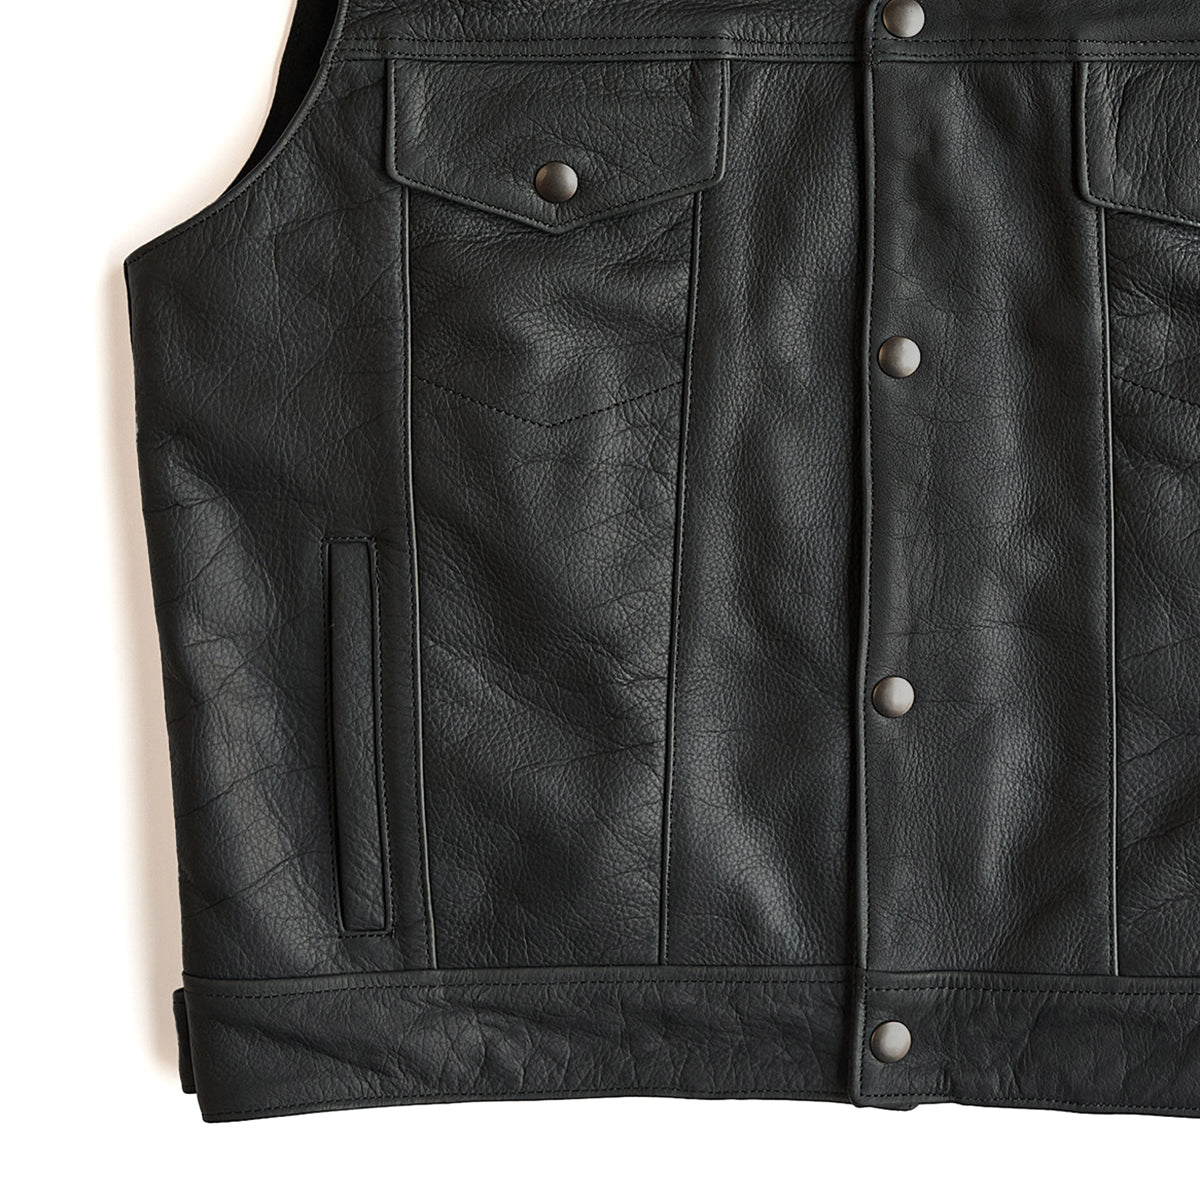 Original Rider Vest No. 4319 — Coronado Leather